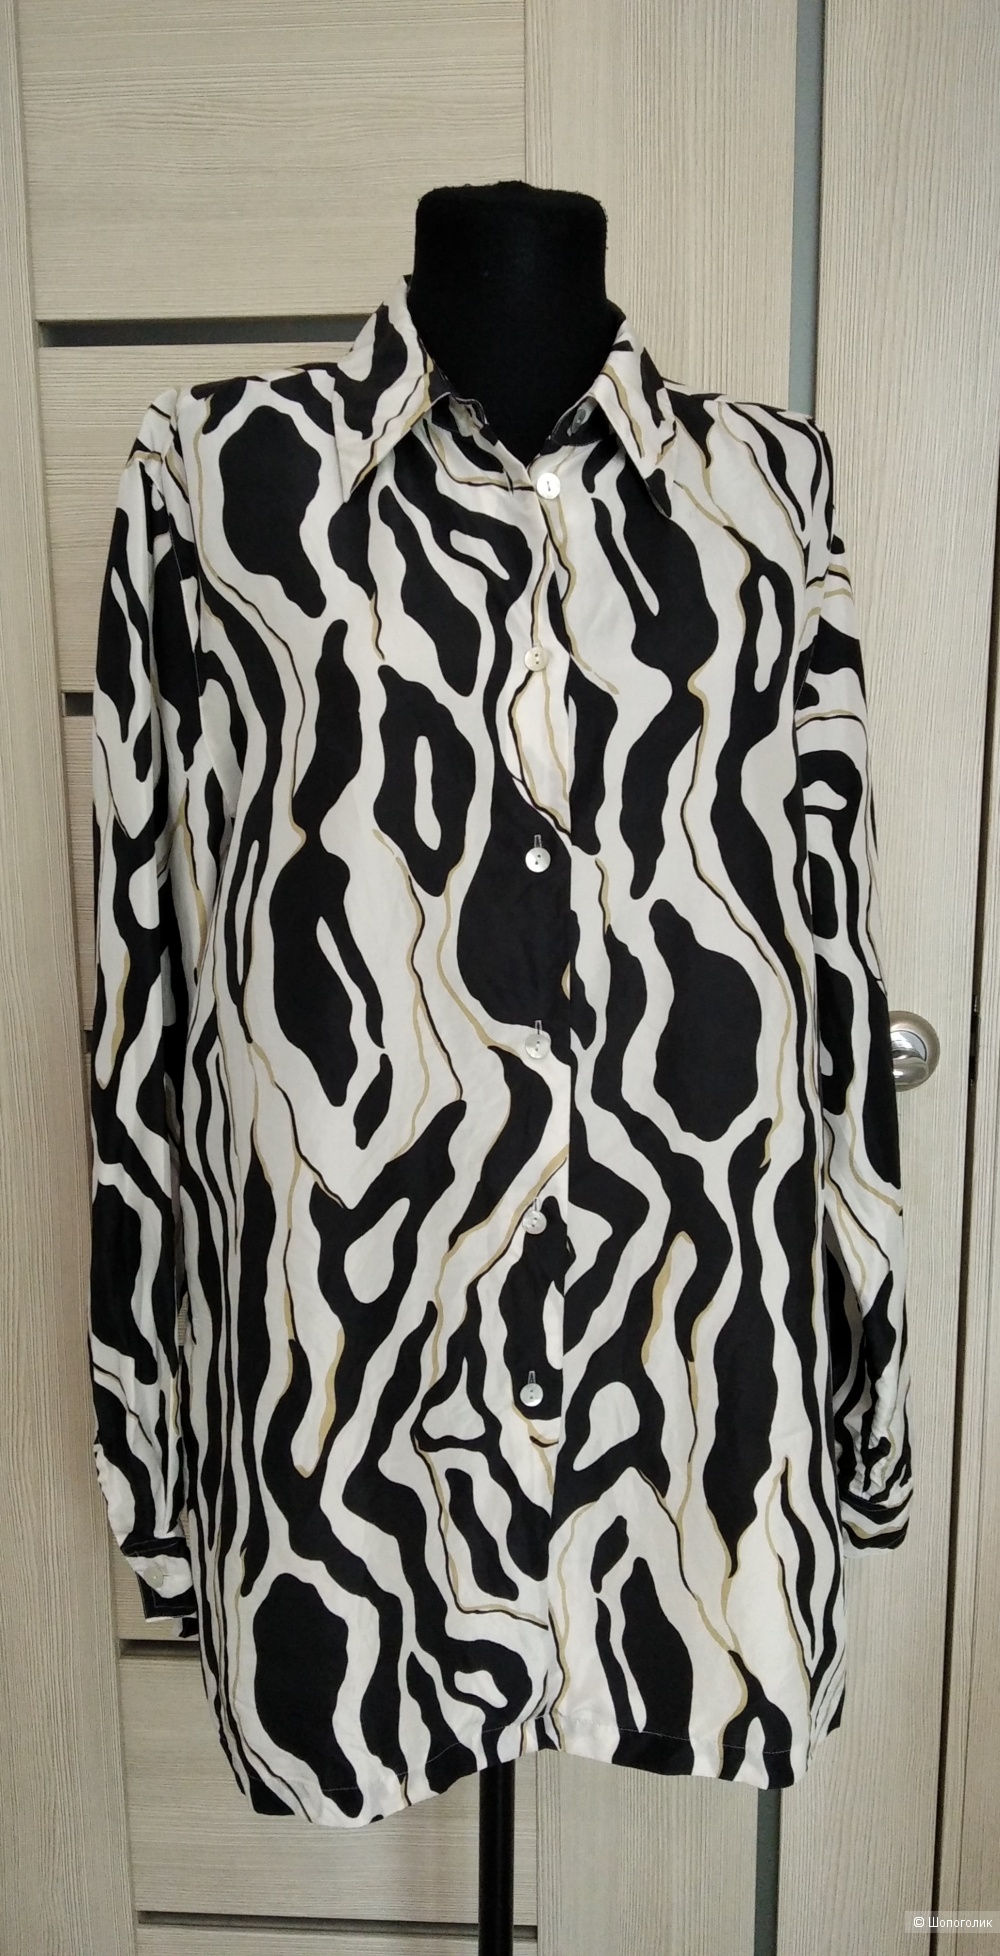 Блузка JANE TAYLOR,размер 48-50